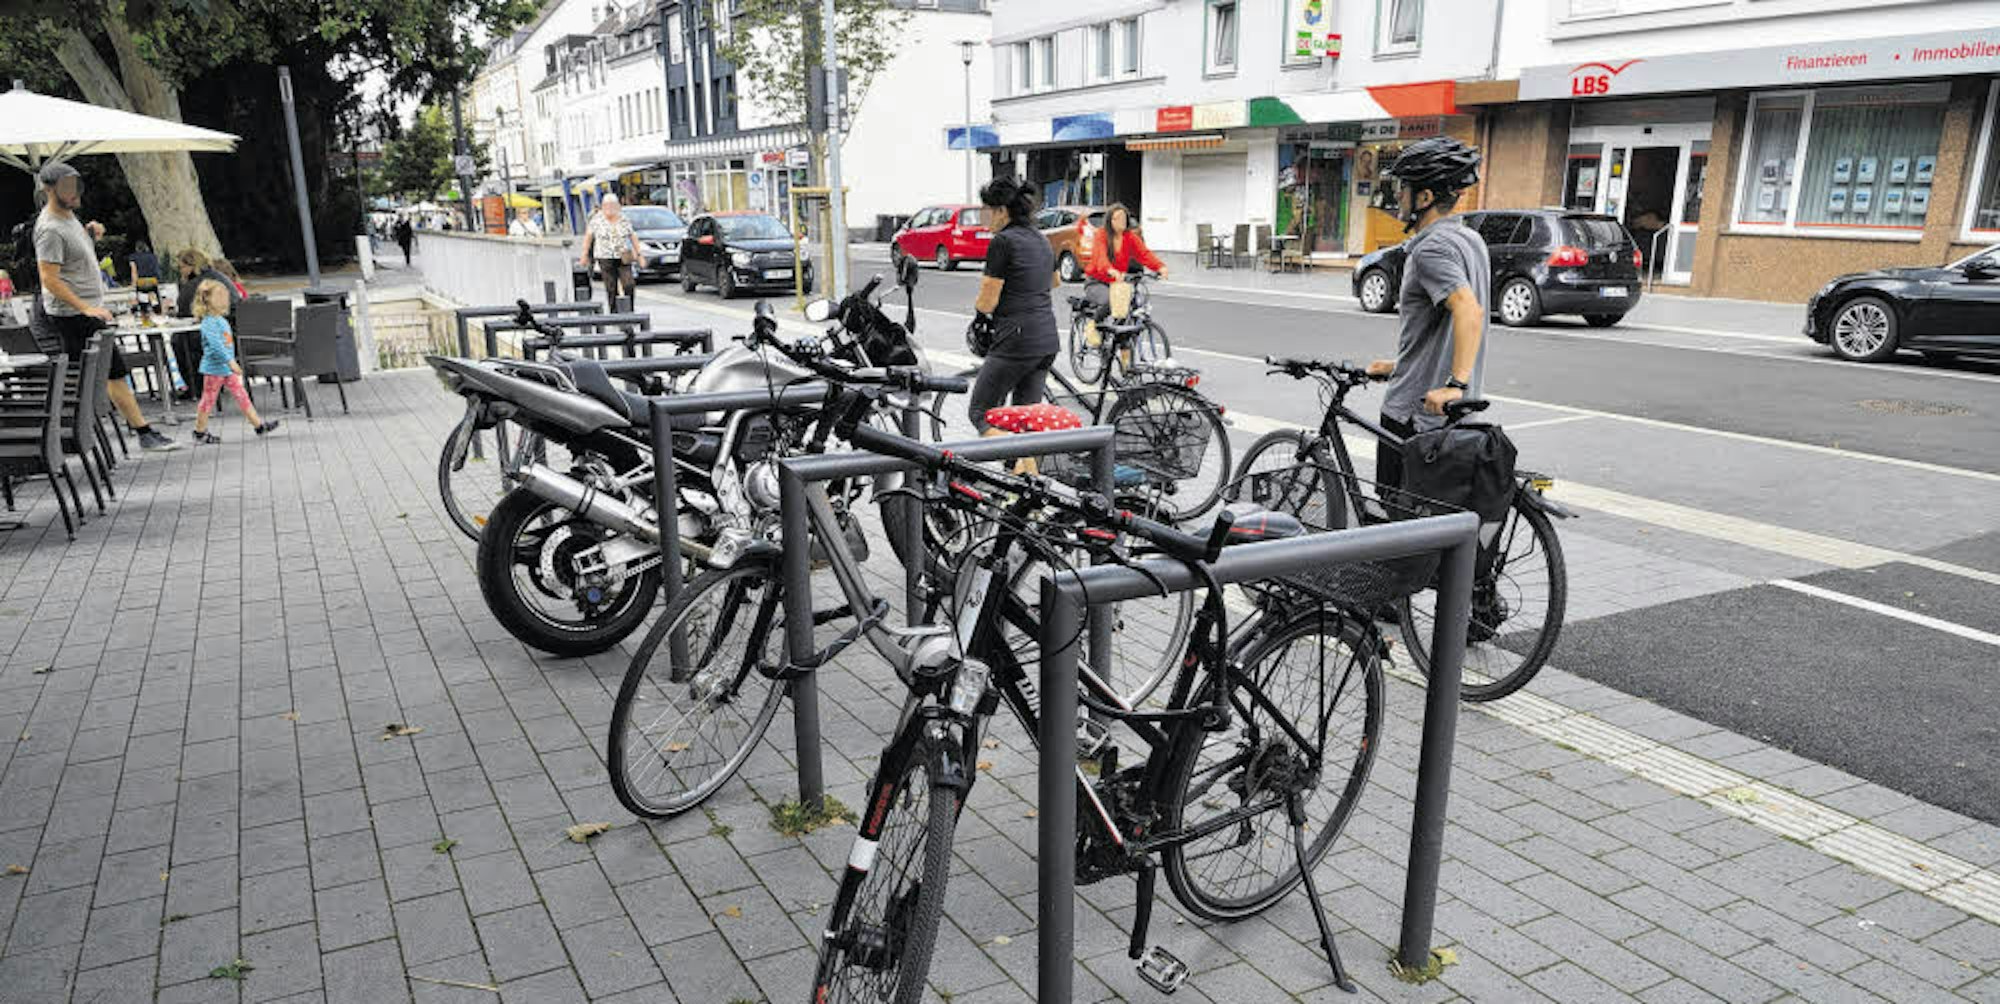 Die Radbügel in der Gladbacher Innenstadt werden von vielen Radfahrern genutzt. Weitere Bügel sind geplant.